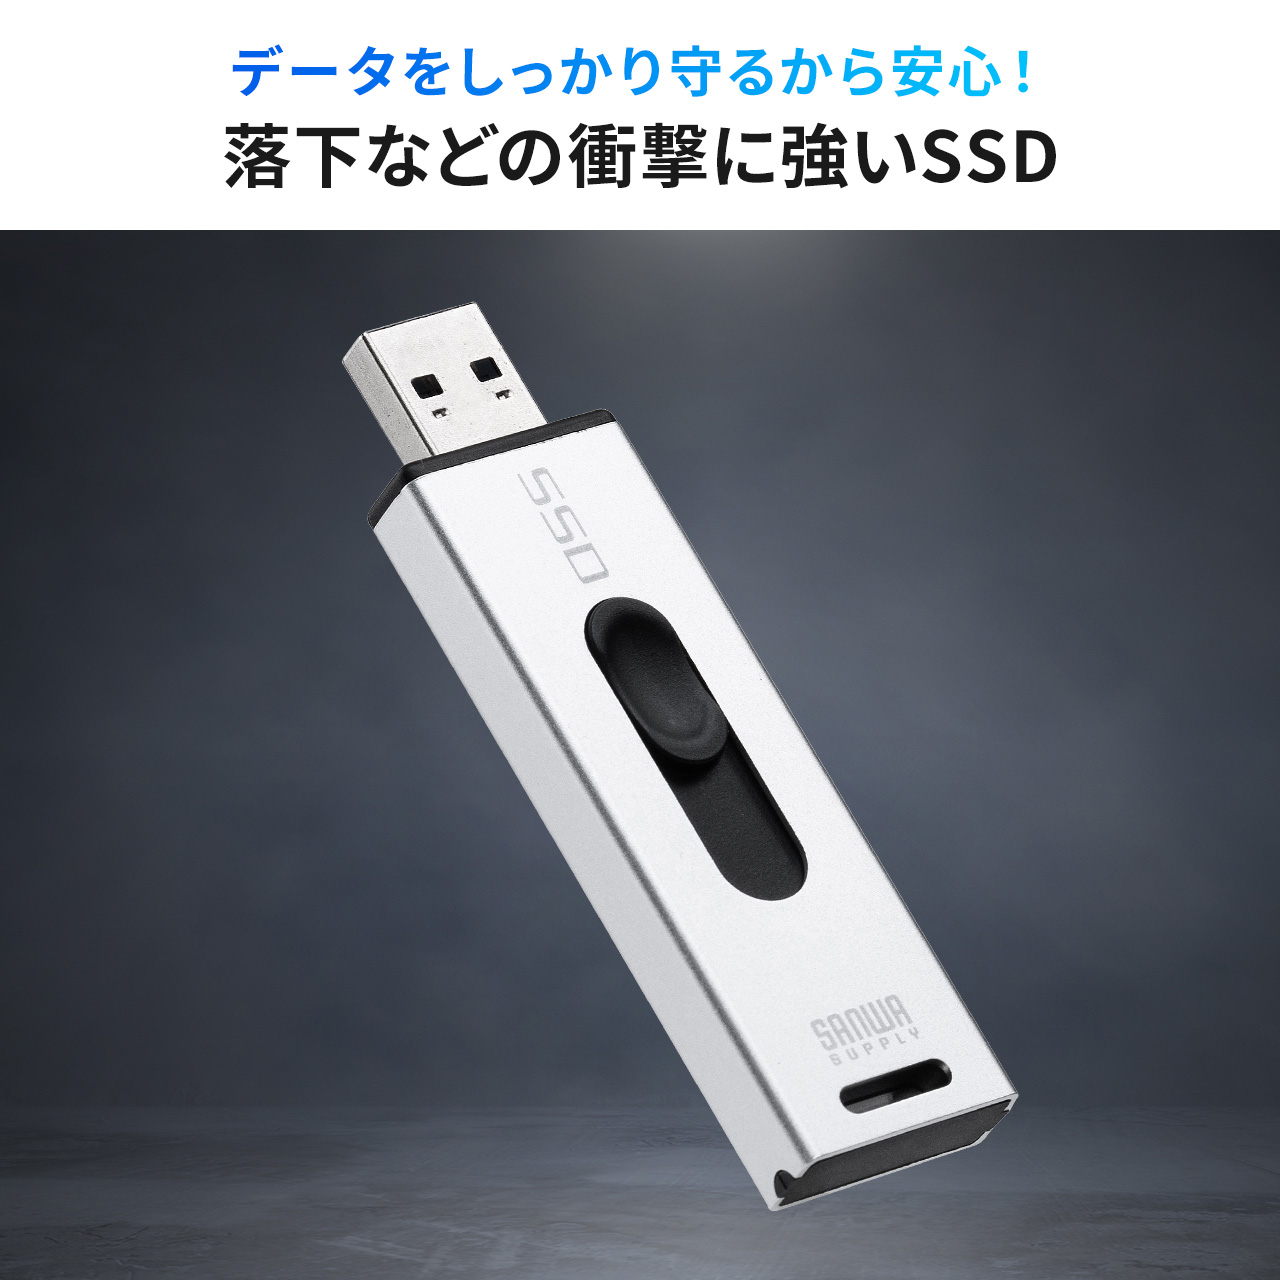 スティック型SSD 1TB 外付け ポータブルSSD テレビ録画 TV録画用 超小型 USB3.2(Gen2) ゲーム機 PS5 PS4 スライド式  直挿し 高速 データ転送 600-USSD1TBS